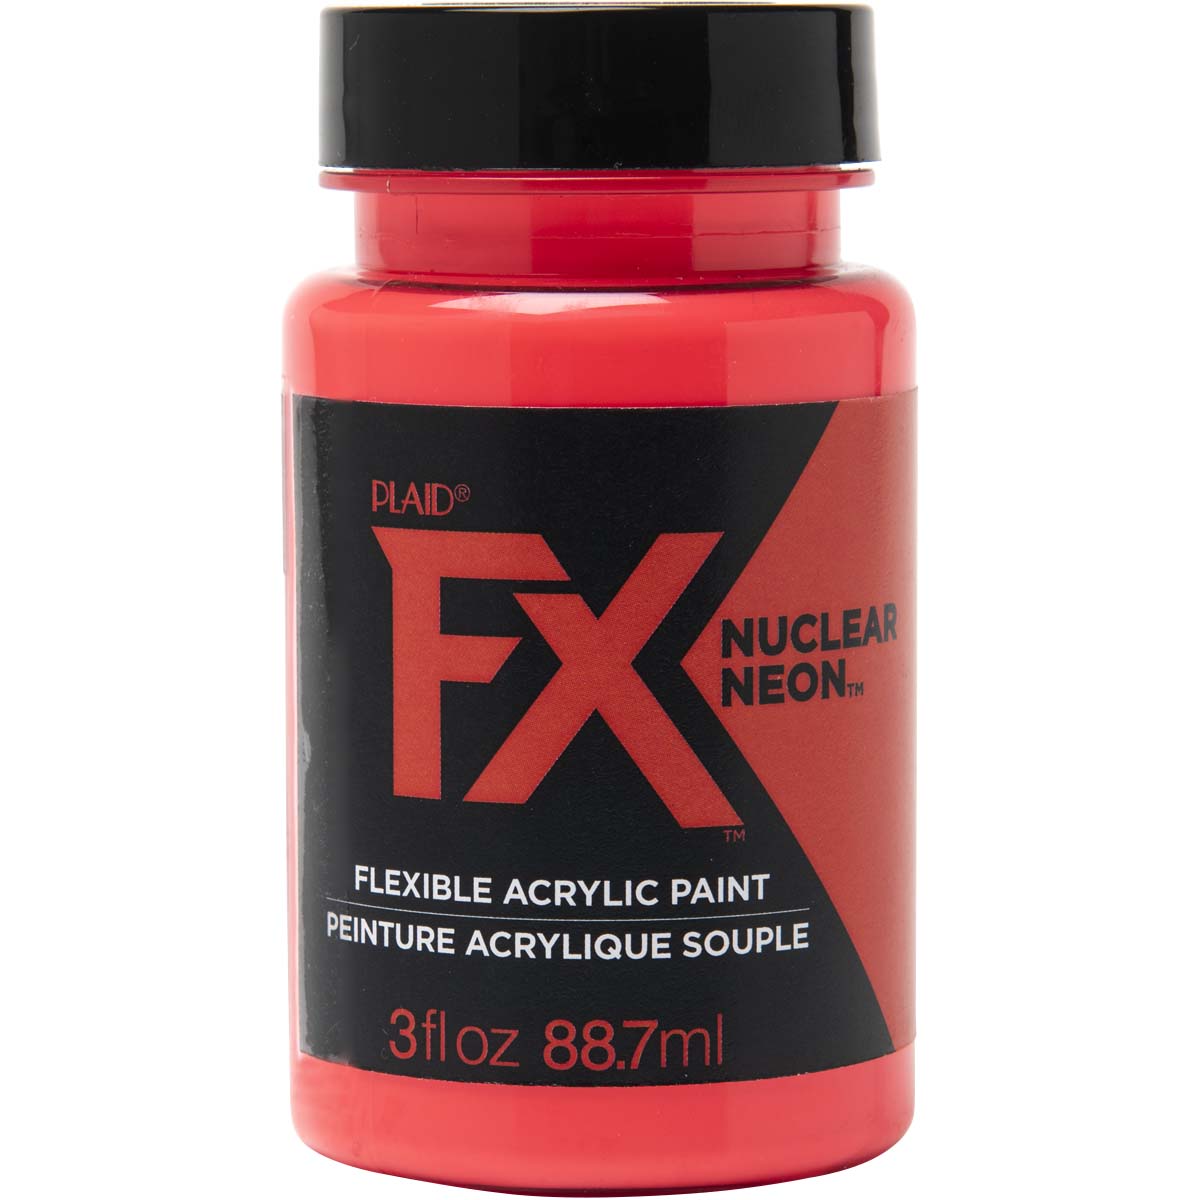 PlaidFX Nuclear Neon Flexible Acrylic Paint - Charged, 3 oz. - 36877